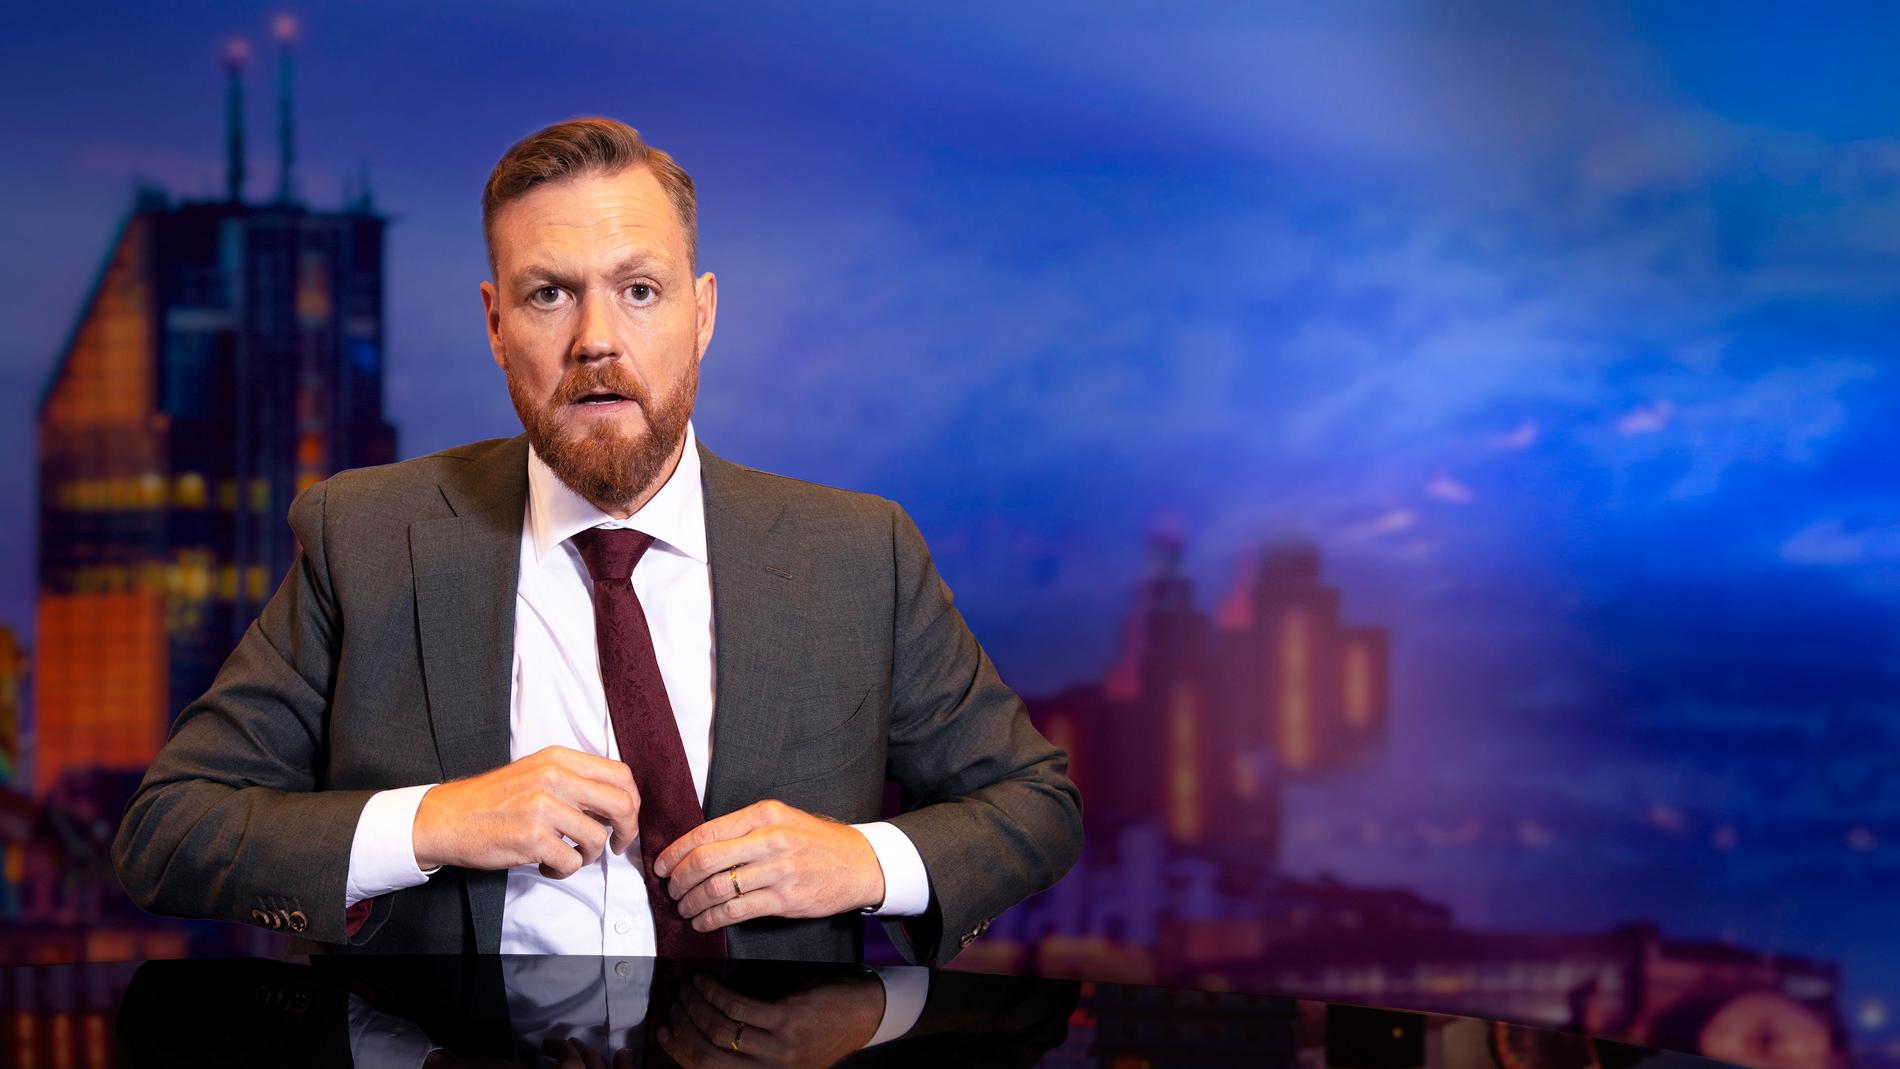 Kristoffer Ahonen Appelquist leder satirprogrammet ”Svenska nyheter” som flera gånger hamnat i blåsväder. Pressbild.